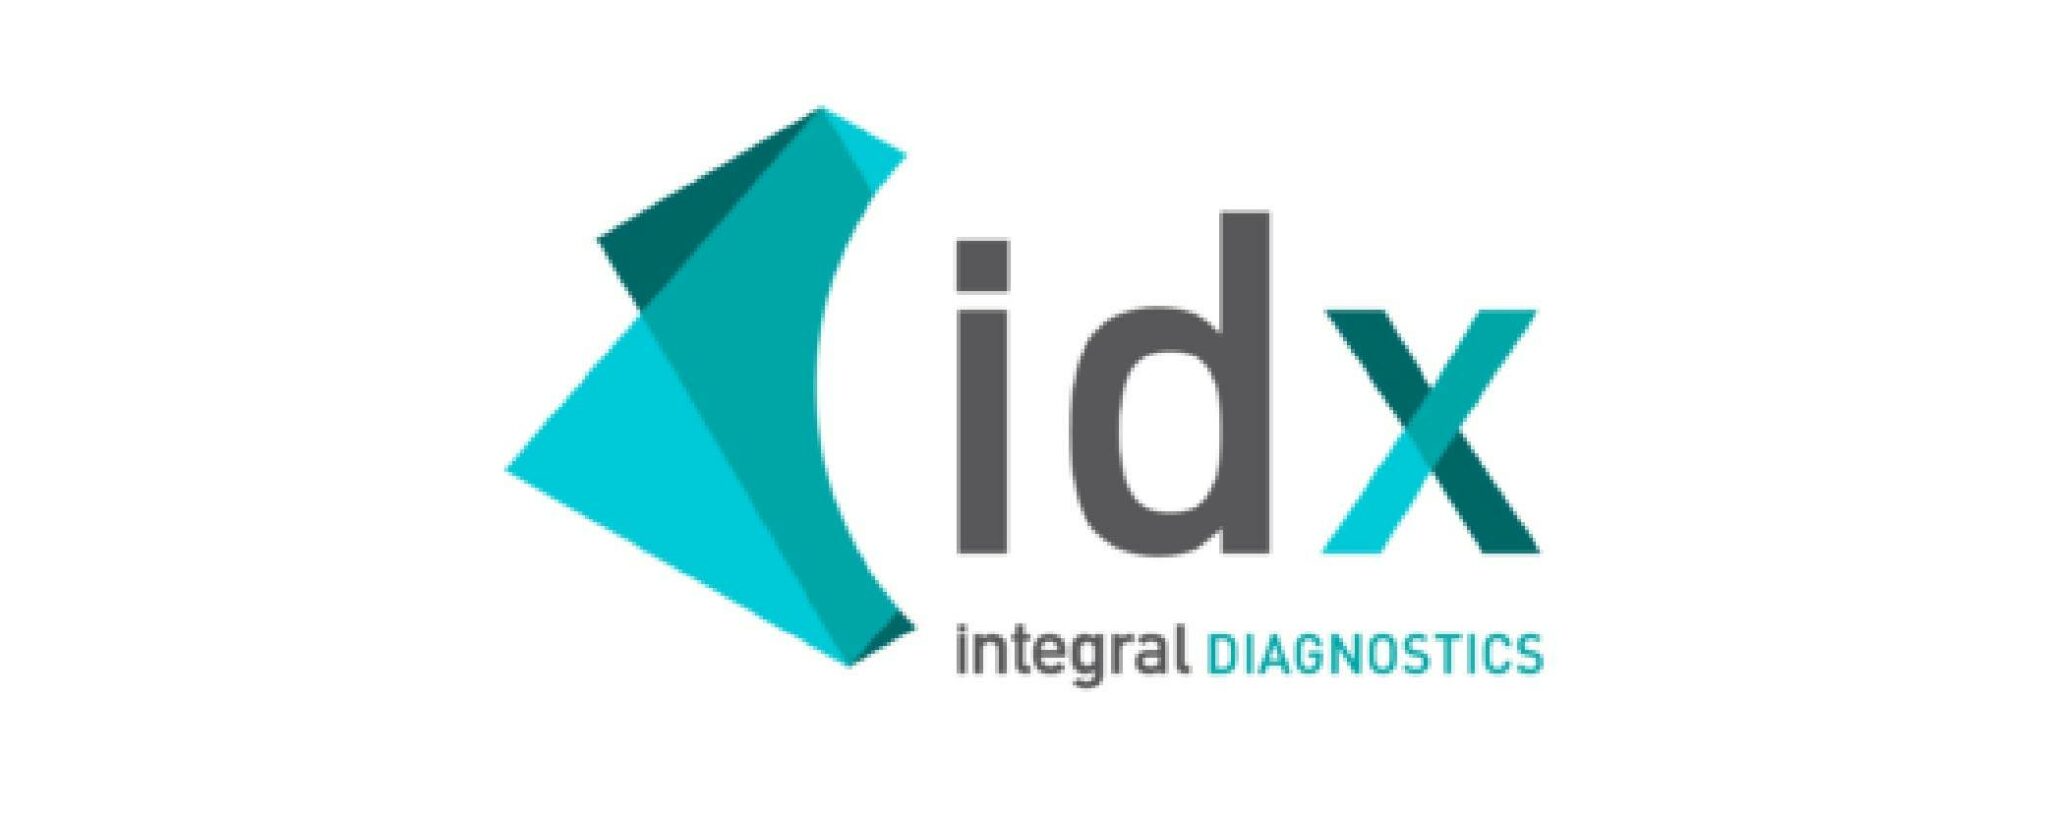 IDX integral diagnostics